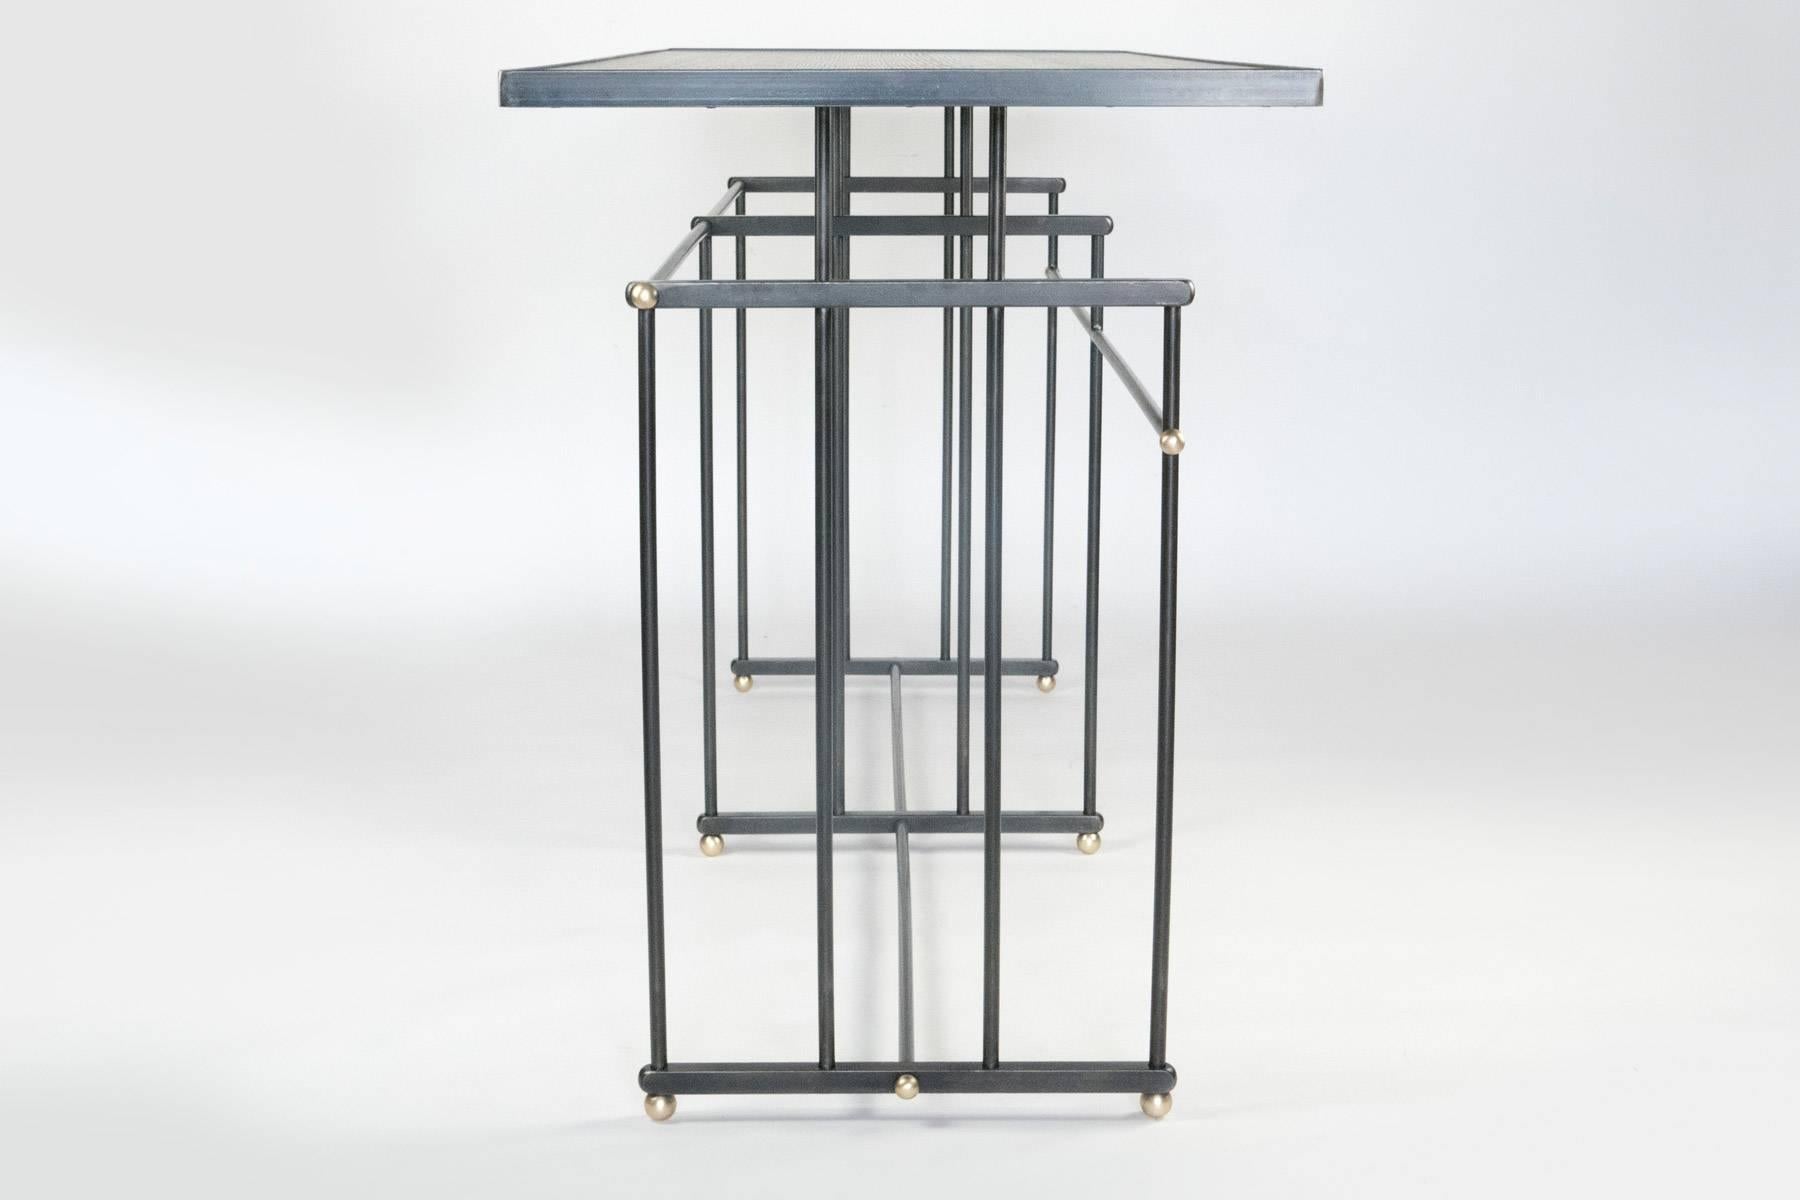 Art Deco Plaisance Console Table, by Bourgeois Boheme Atelier